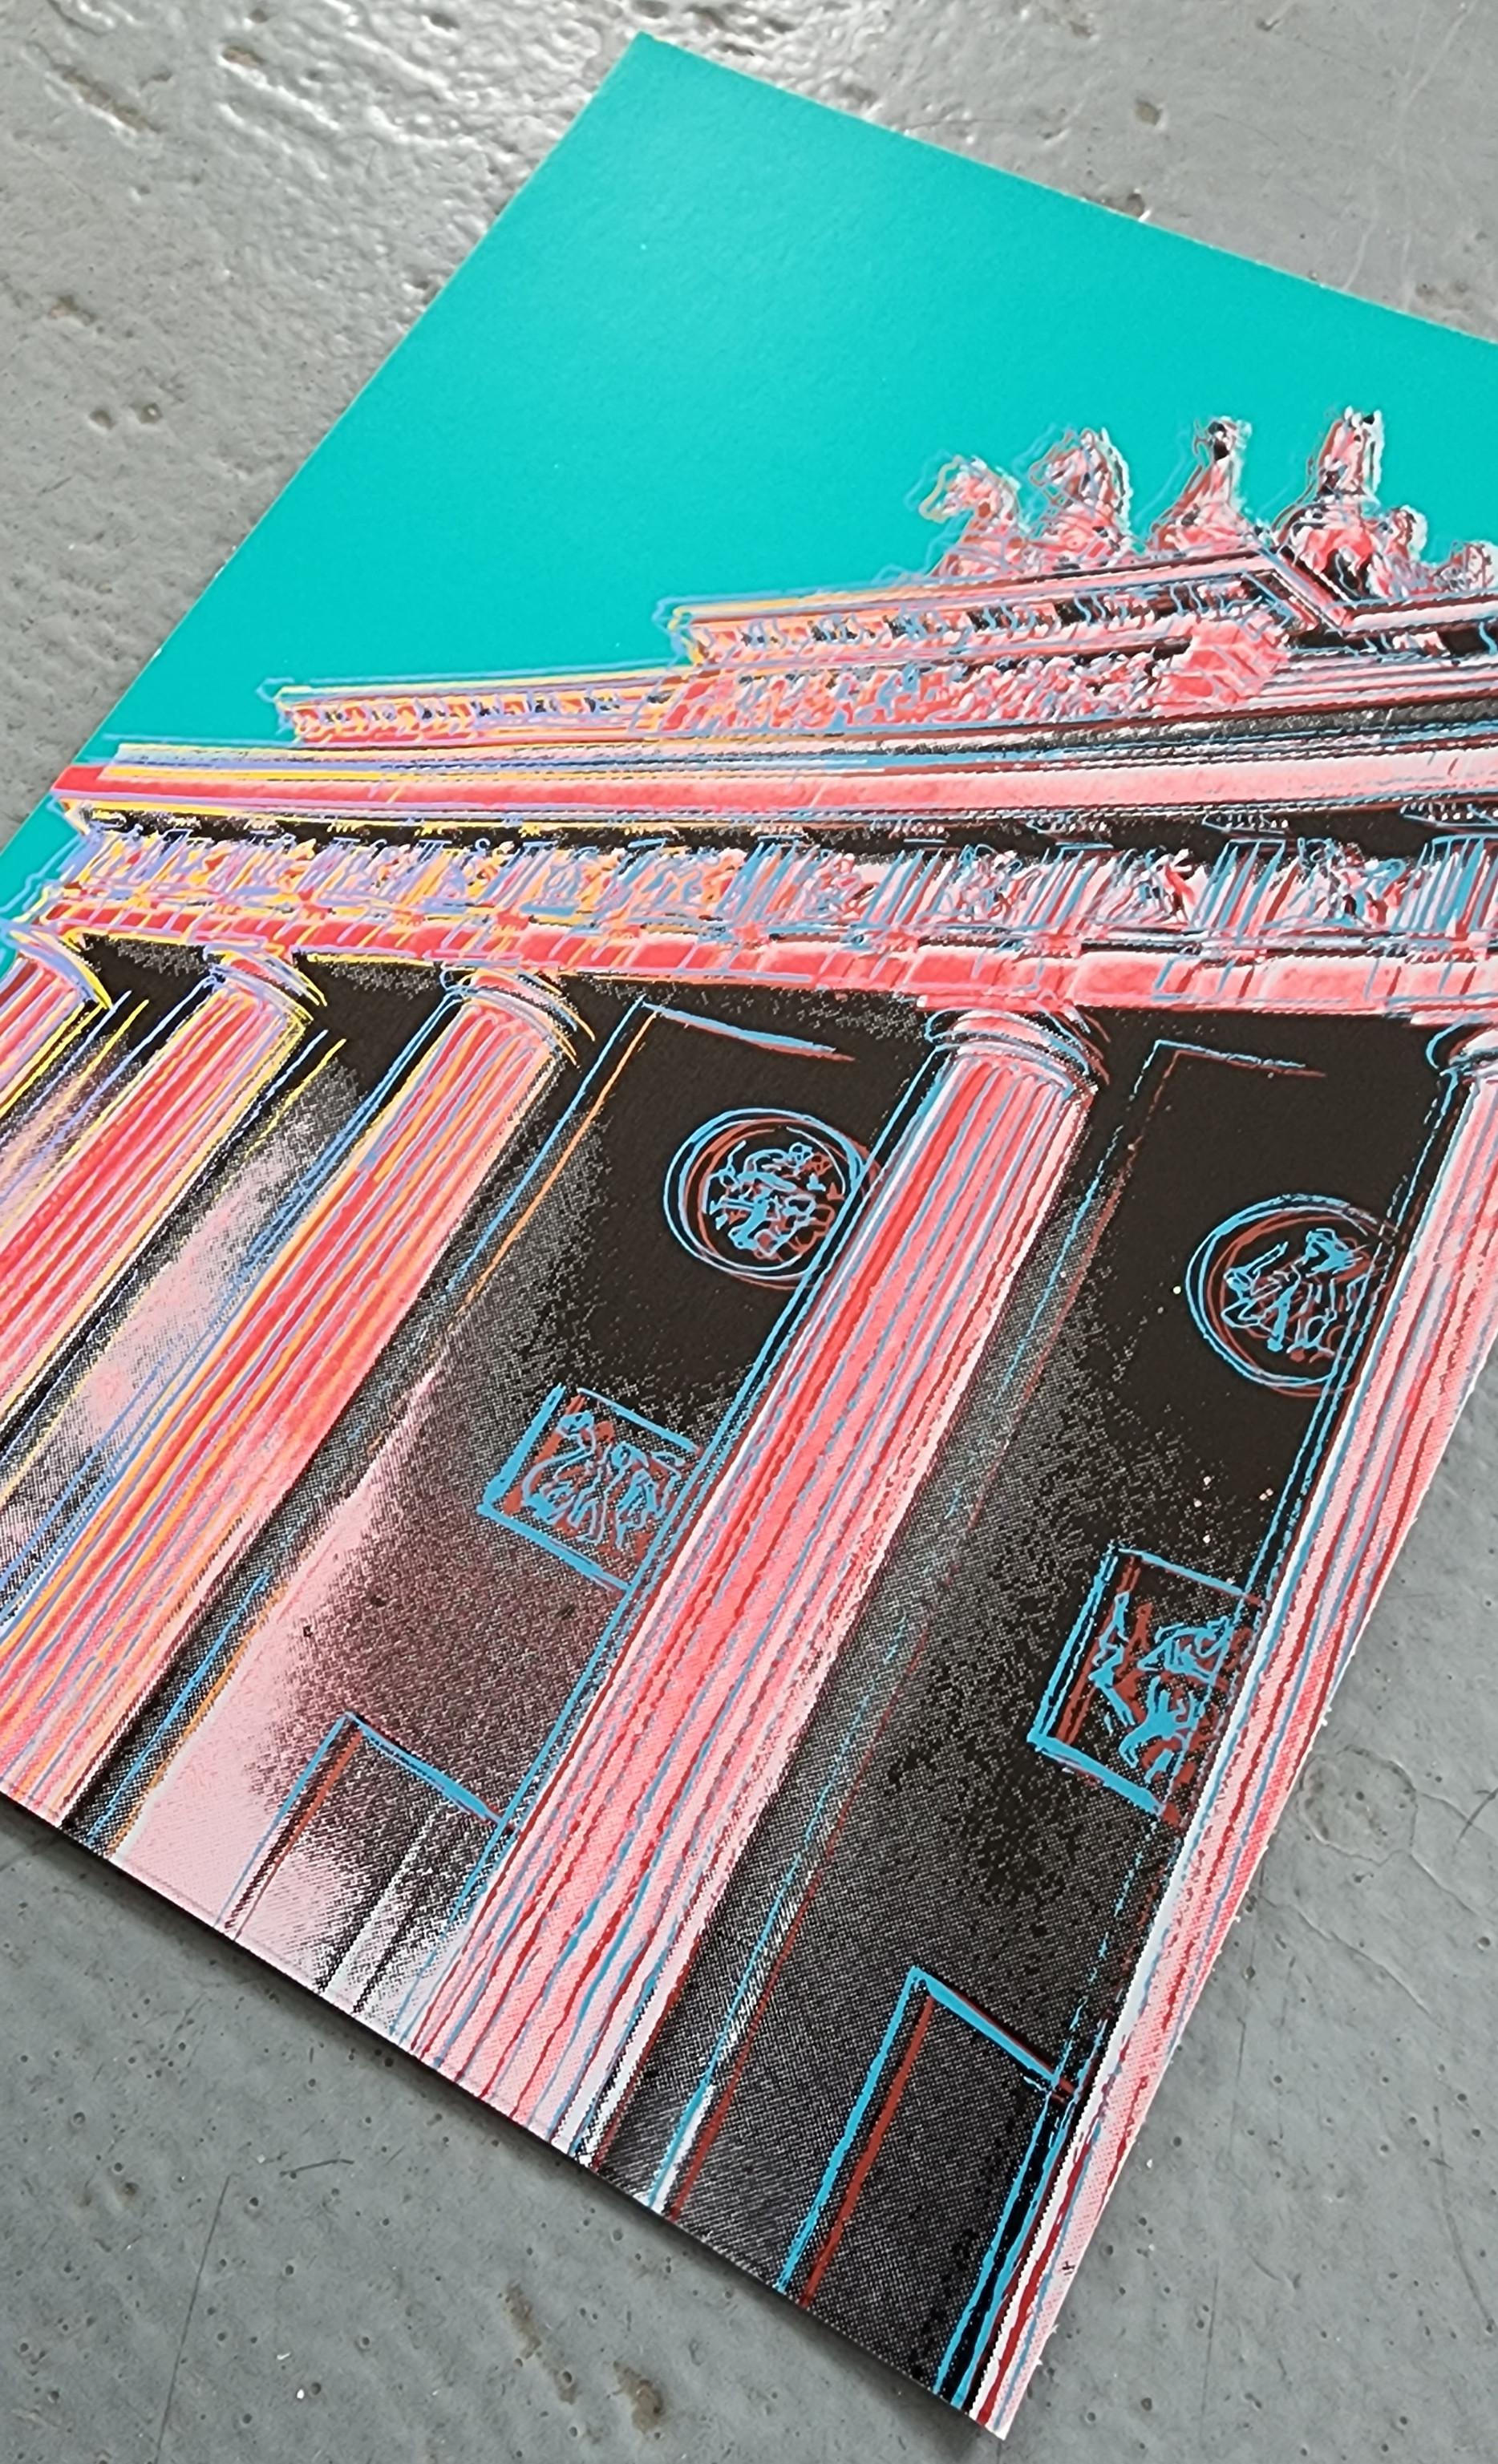 Porte de Brandebourg (rouge, teintes sarcelles - Brandenburger Tor) (40% DE RÉDUCTION SUR LE PRIX DE LISTE) - Pop Art Print par Jurgen Kuhl 